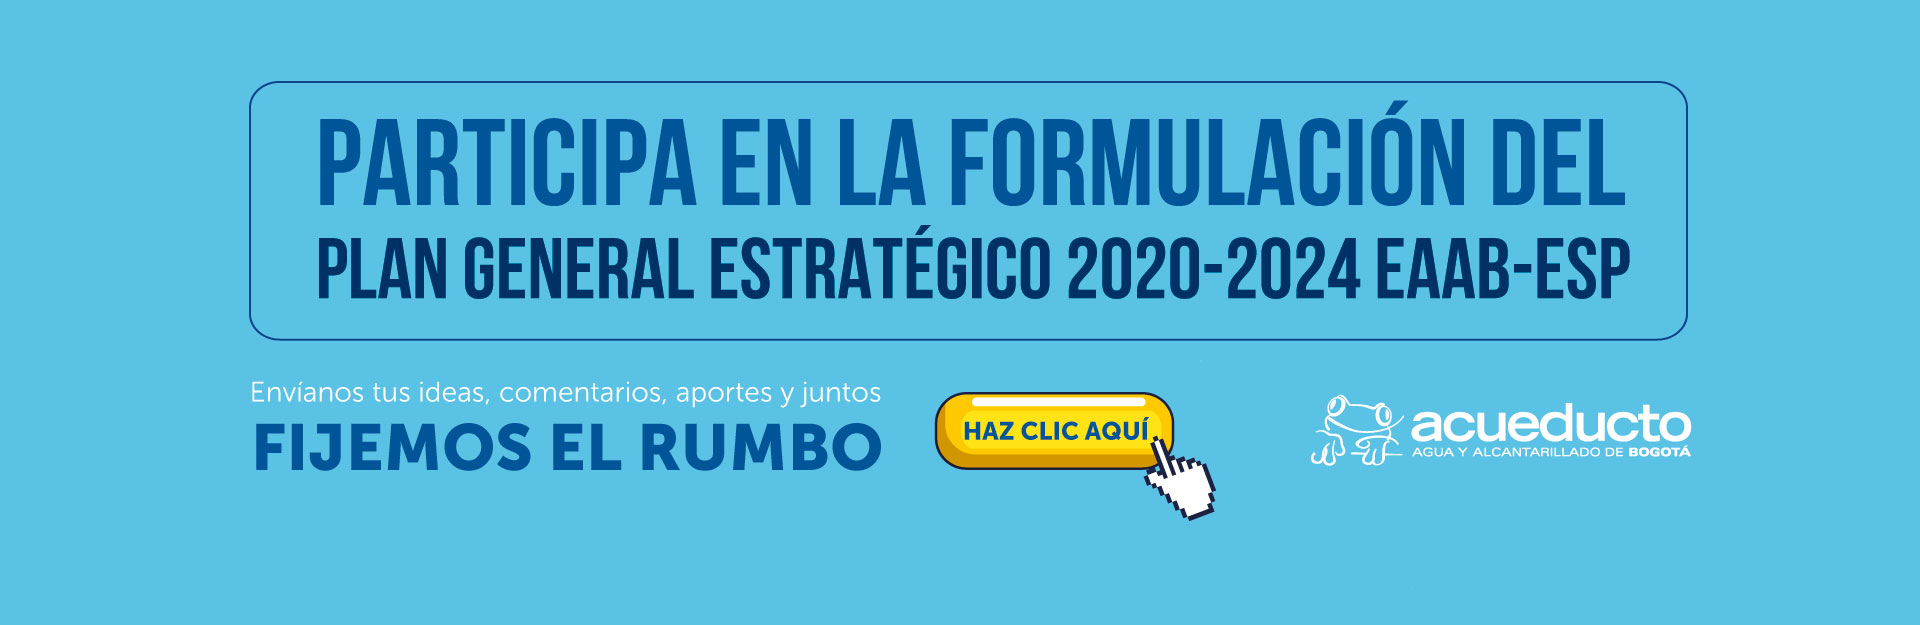 Participa en la formulación del Plan General Estratégico de la EAAB -ESP 2020-2024